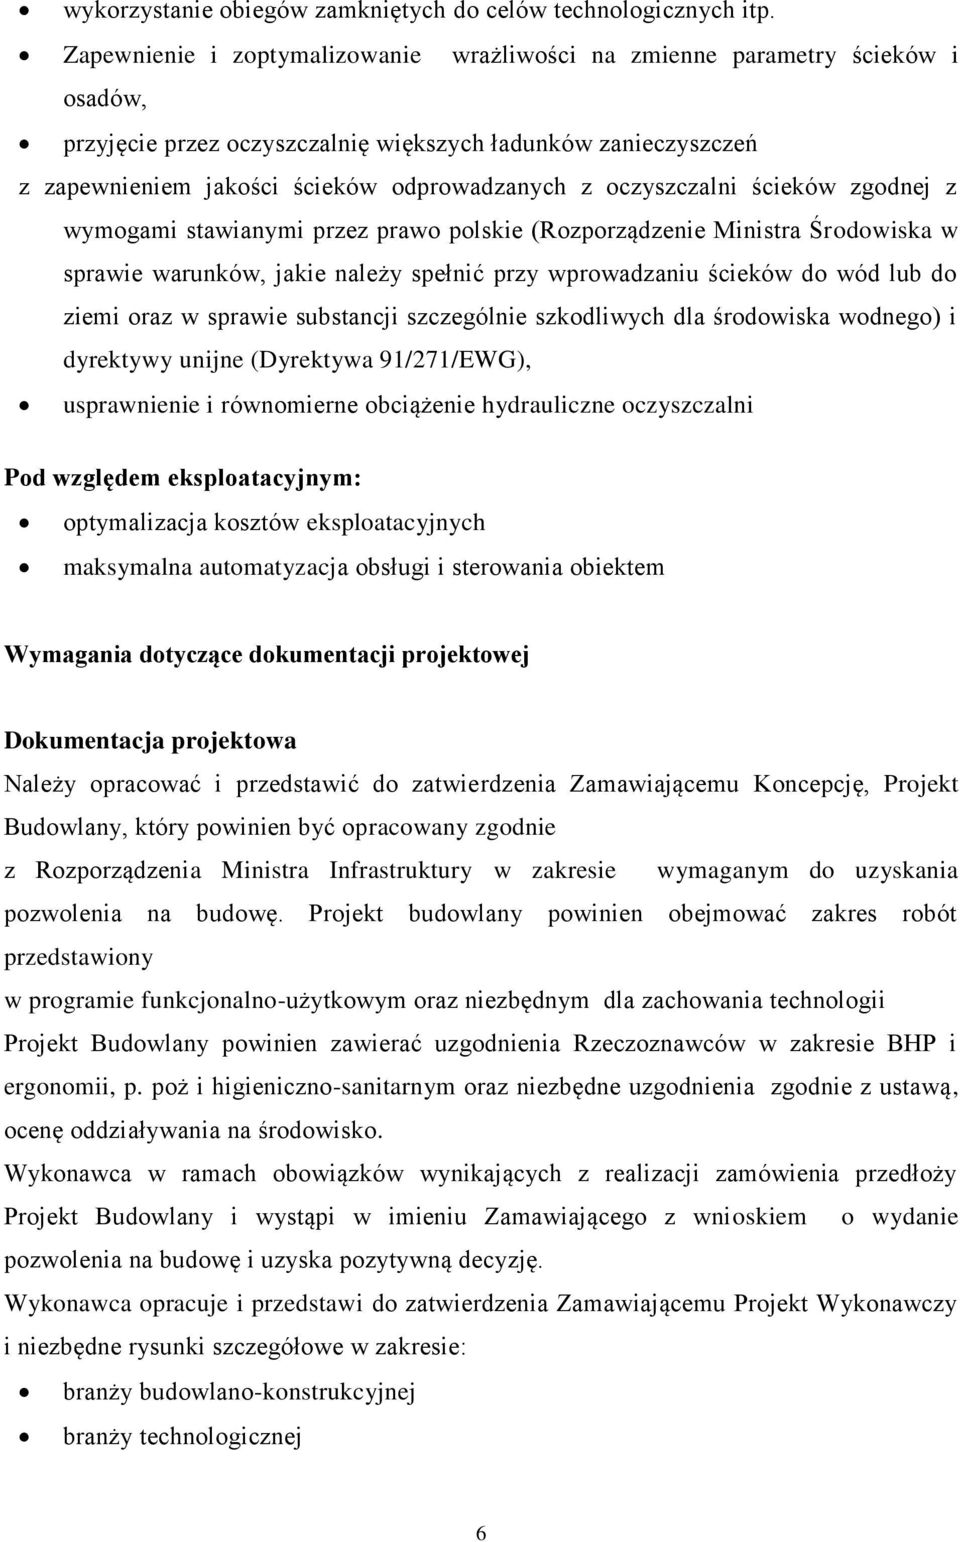 oczyszczalni ścieków zgodnej z wymogami stawianymi przez prawo polskie (Rozporządzenie Ministra Środowiska w sprawie warunków, jakie należy spełnić przy wprowadzaniu ścieków do wód lub do ziemi oraz